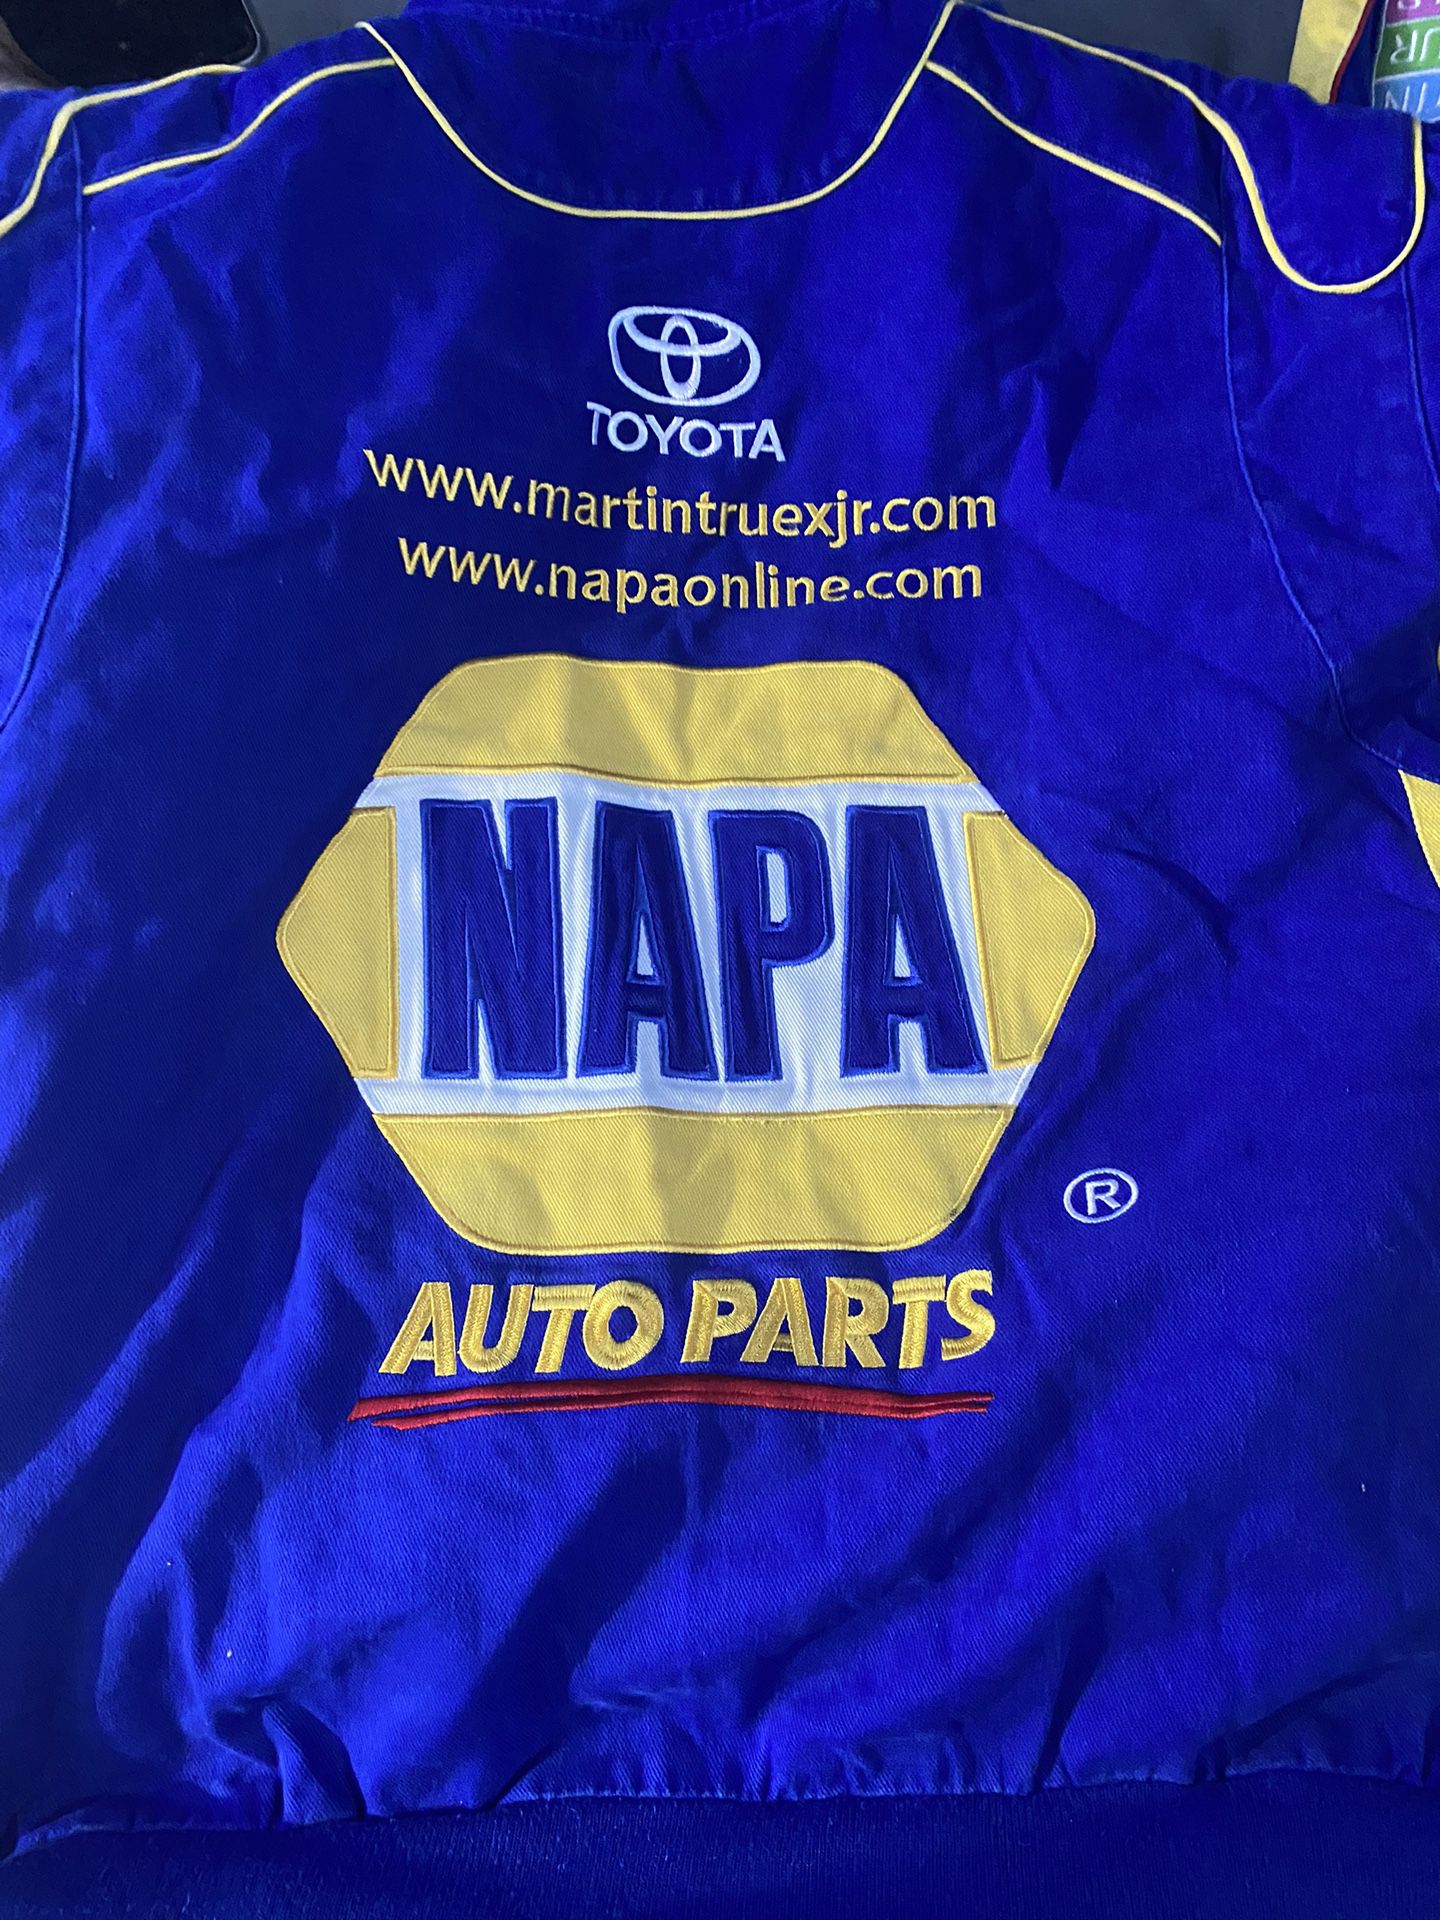 Napa Auto Parts Jacket 